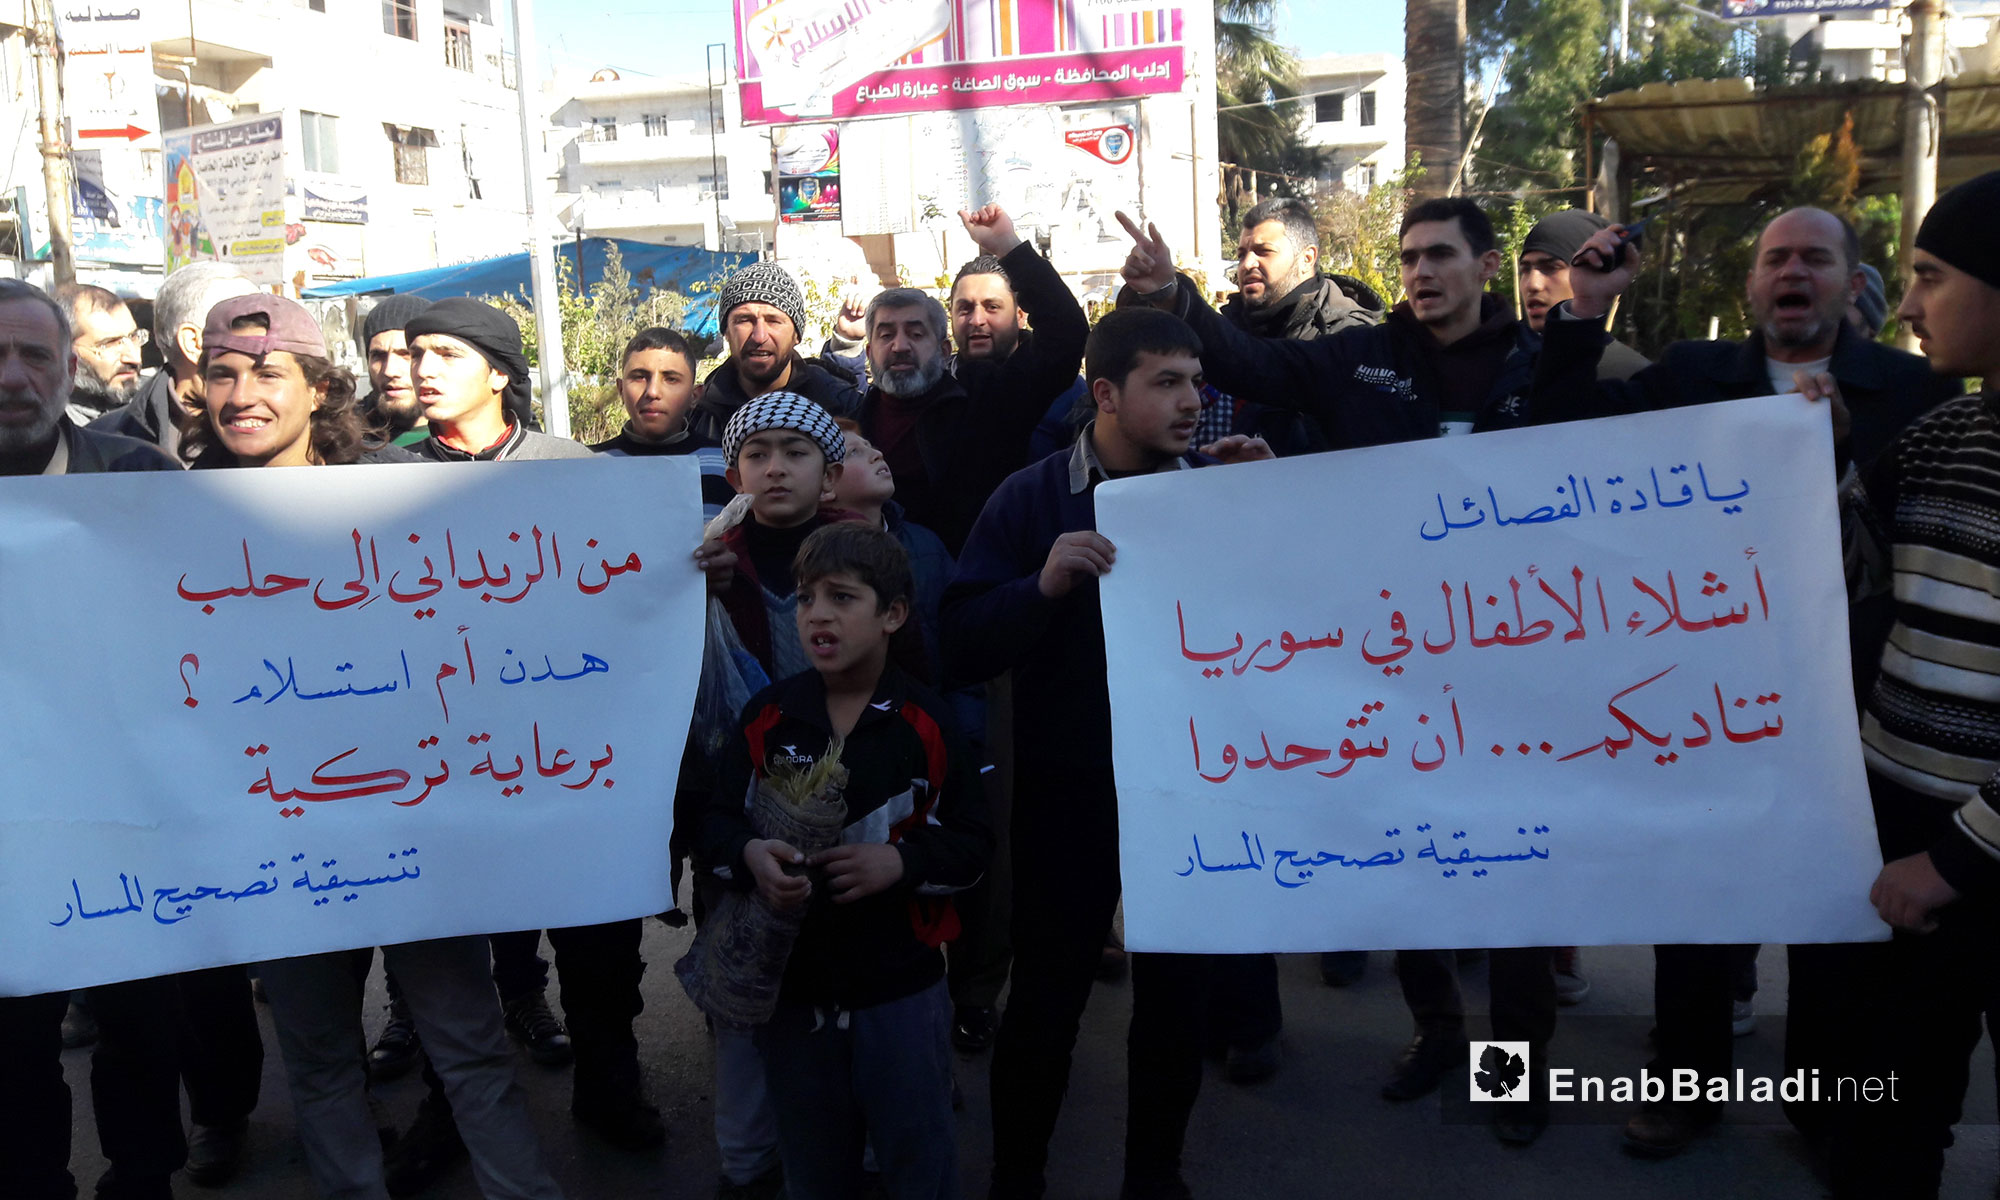 مظاهرة من مدينة ادلب بعد صلاة الجمعة تضامناً مع حلب - 9 كانون الأول 2016 (عنب بلدي)